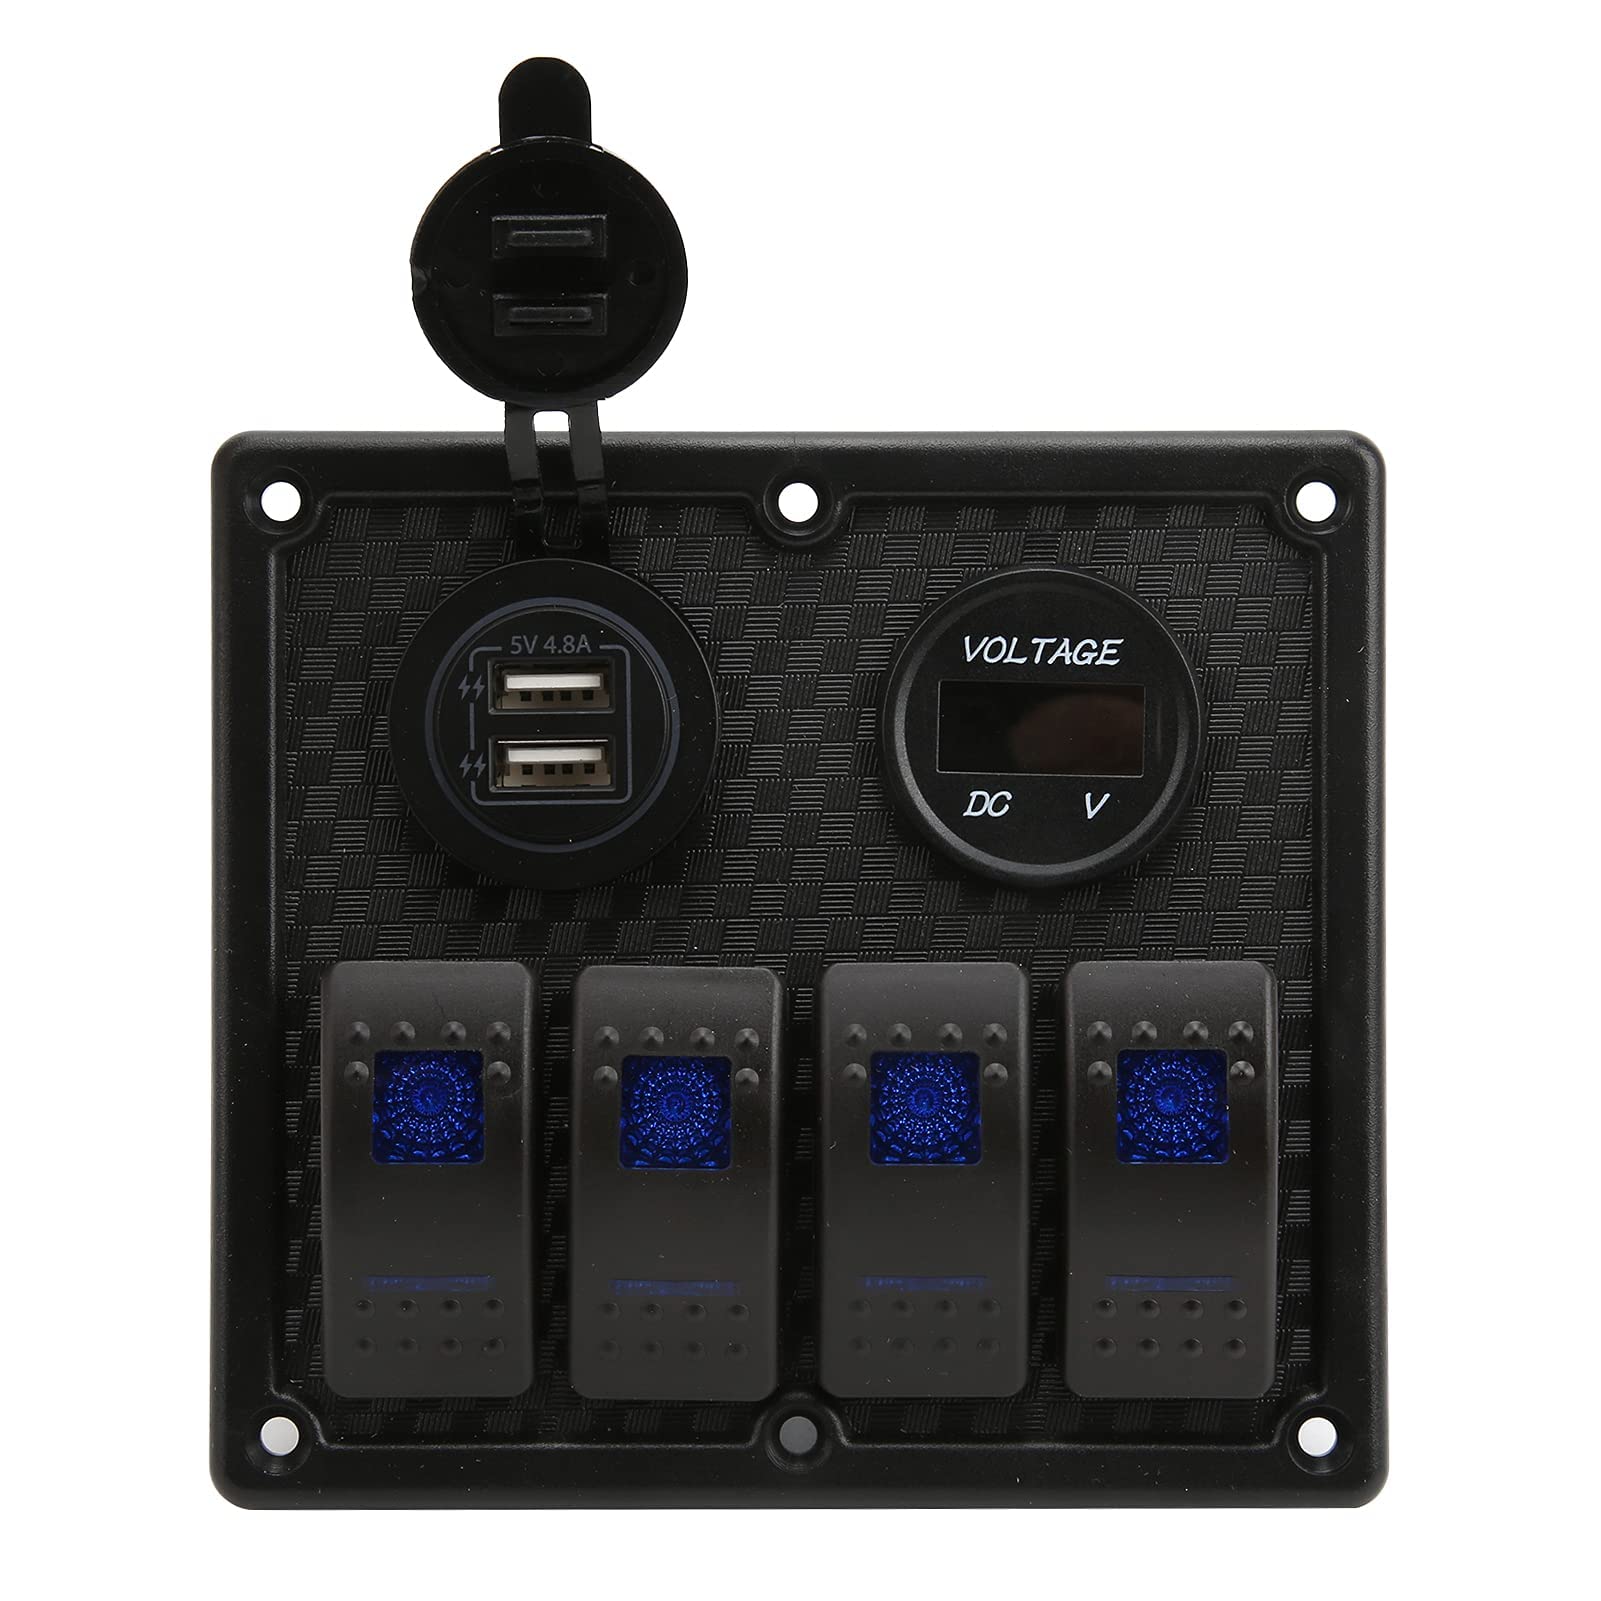 Wippschalter Panel, 12V DC Dual USB LED Wippschalter Panel IP65 Wasserdicht 4 Gang Kippschalter Panel für Marine Boat Car Truck(Ein blaues) Autoschalter Schalter im Auto von Keenso